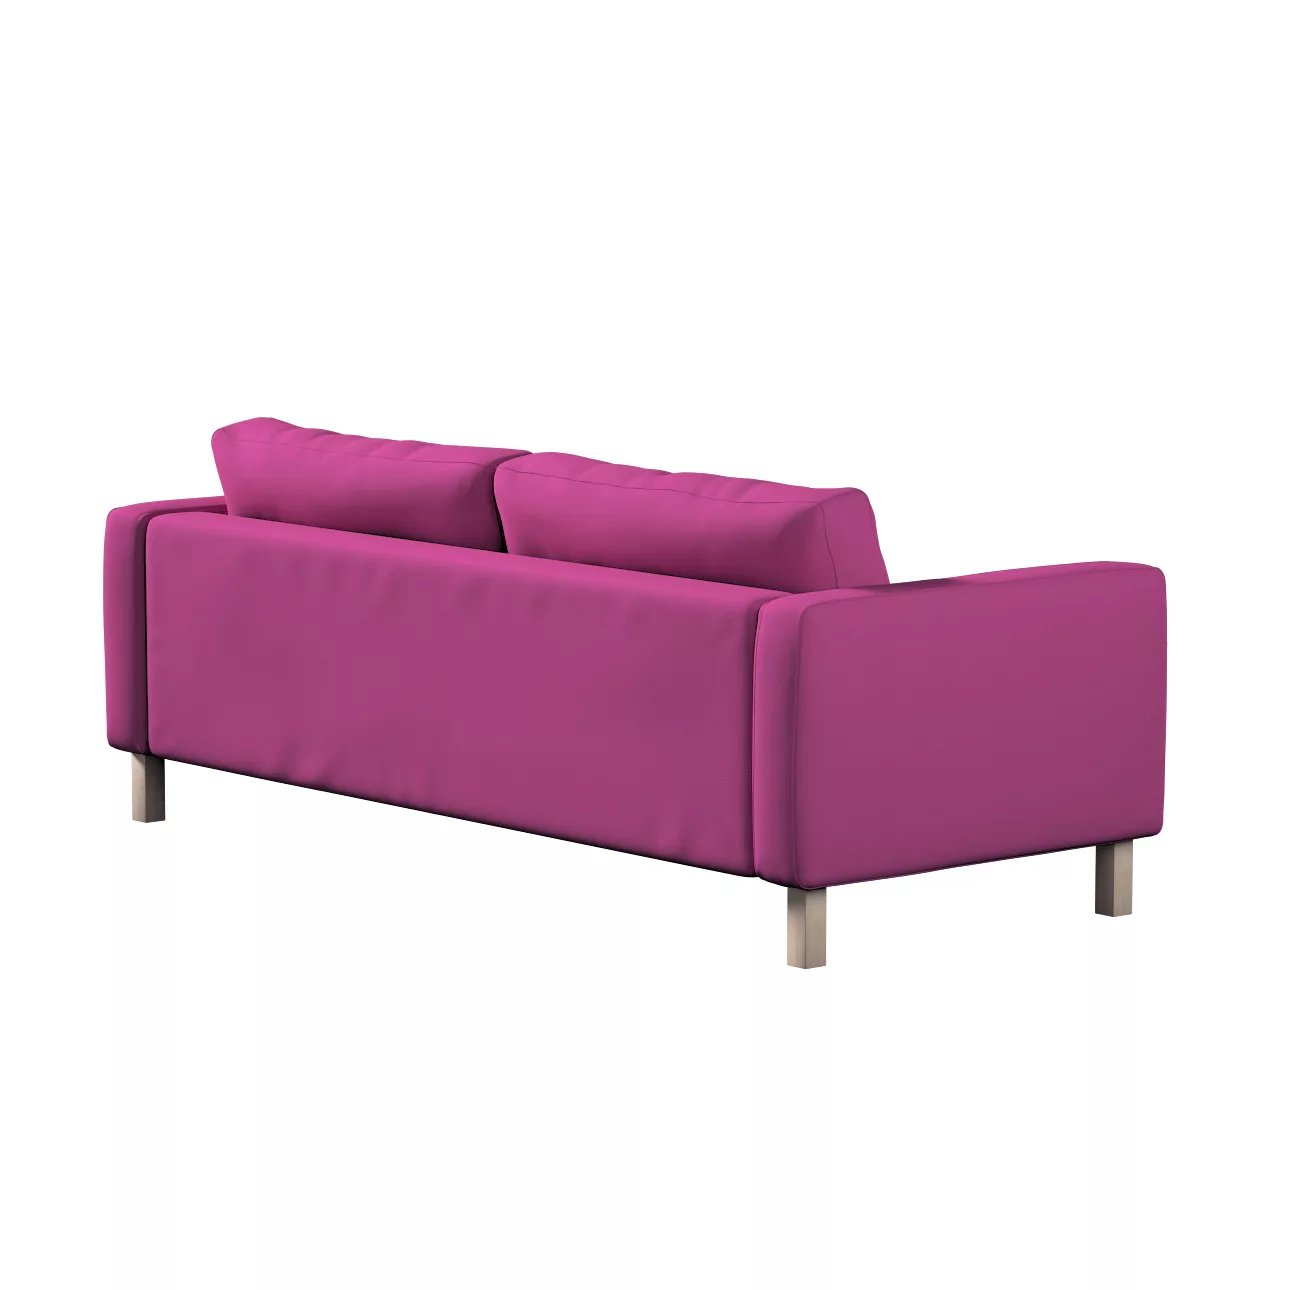 Bezug für Karlstad 3-Sitzer Sofa nicht ausklappbar, kurz, amarant, Bezug fü günstig online kaufen